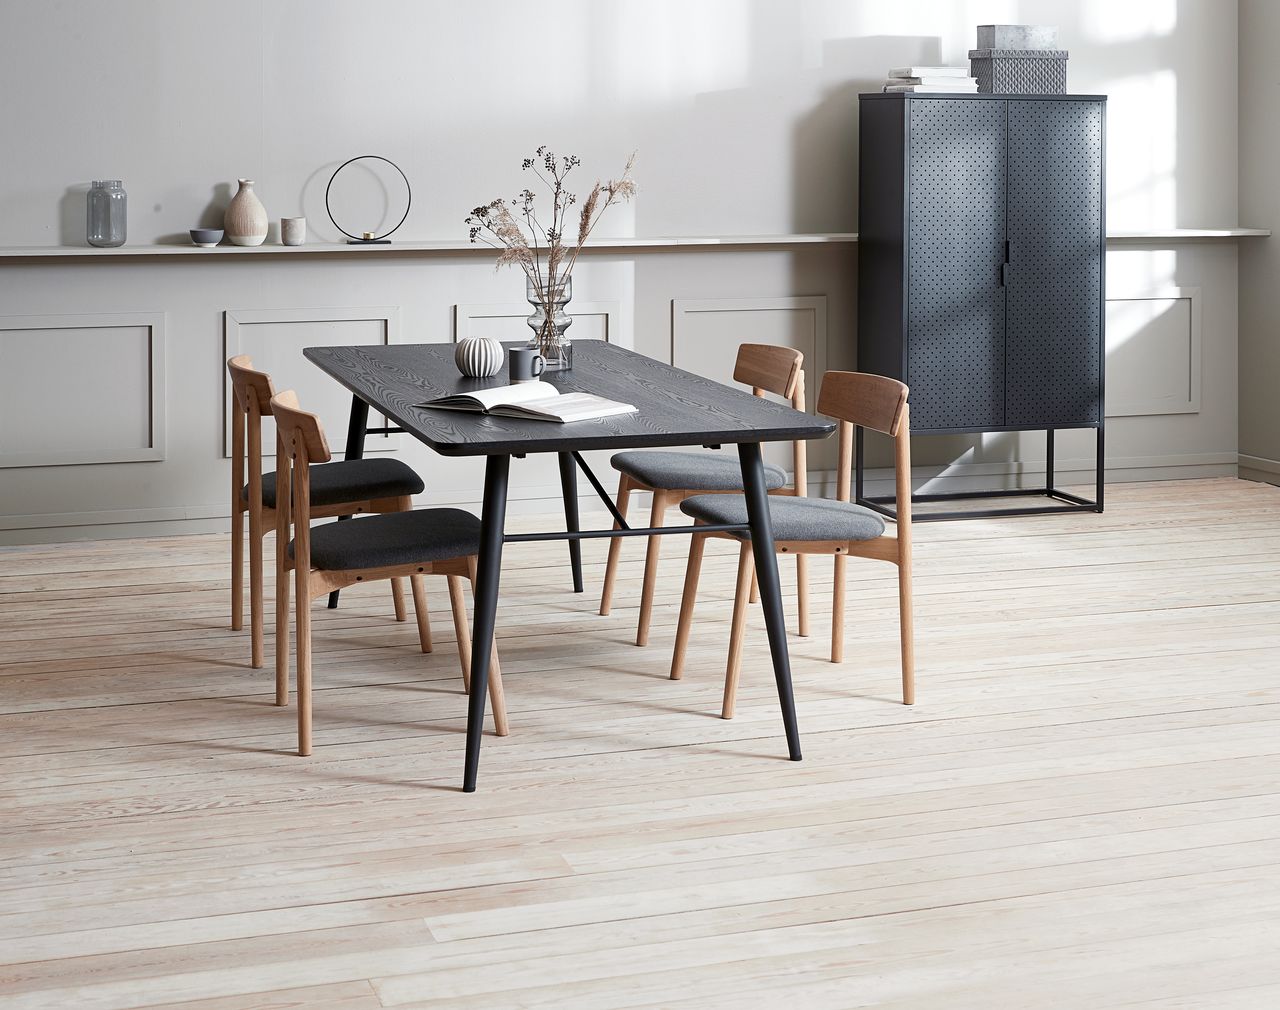 Mẫu nội thất phòng bếp sử dụng chất liệu gỗ phong cách Scandinavian